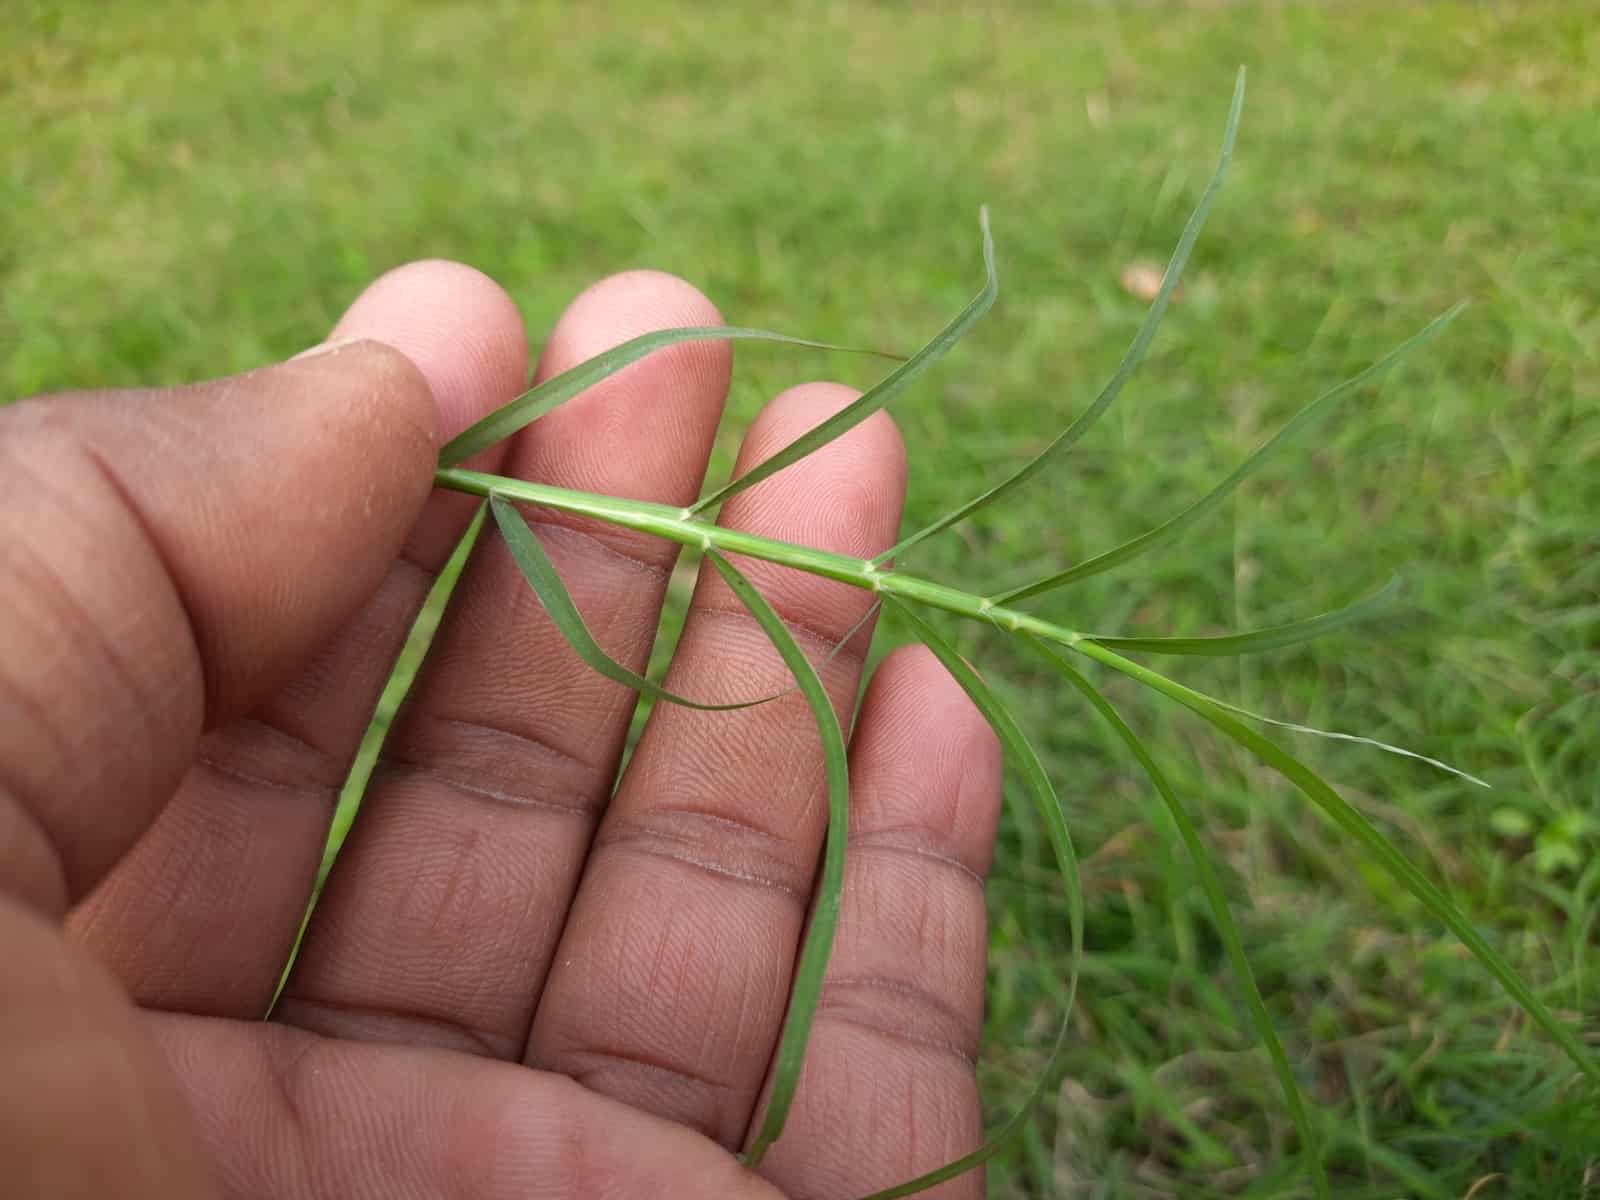 bermuda grass cutting